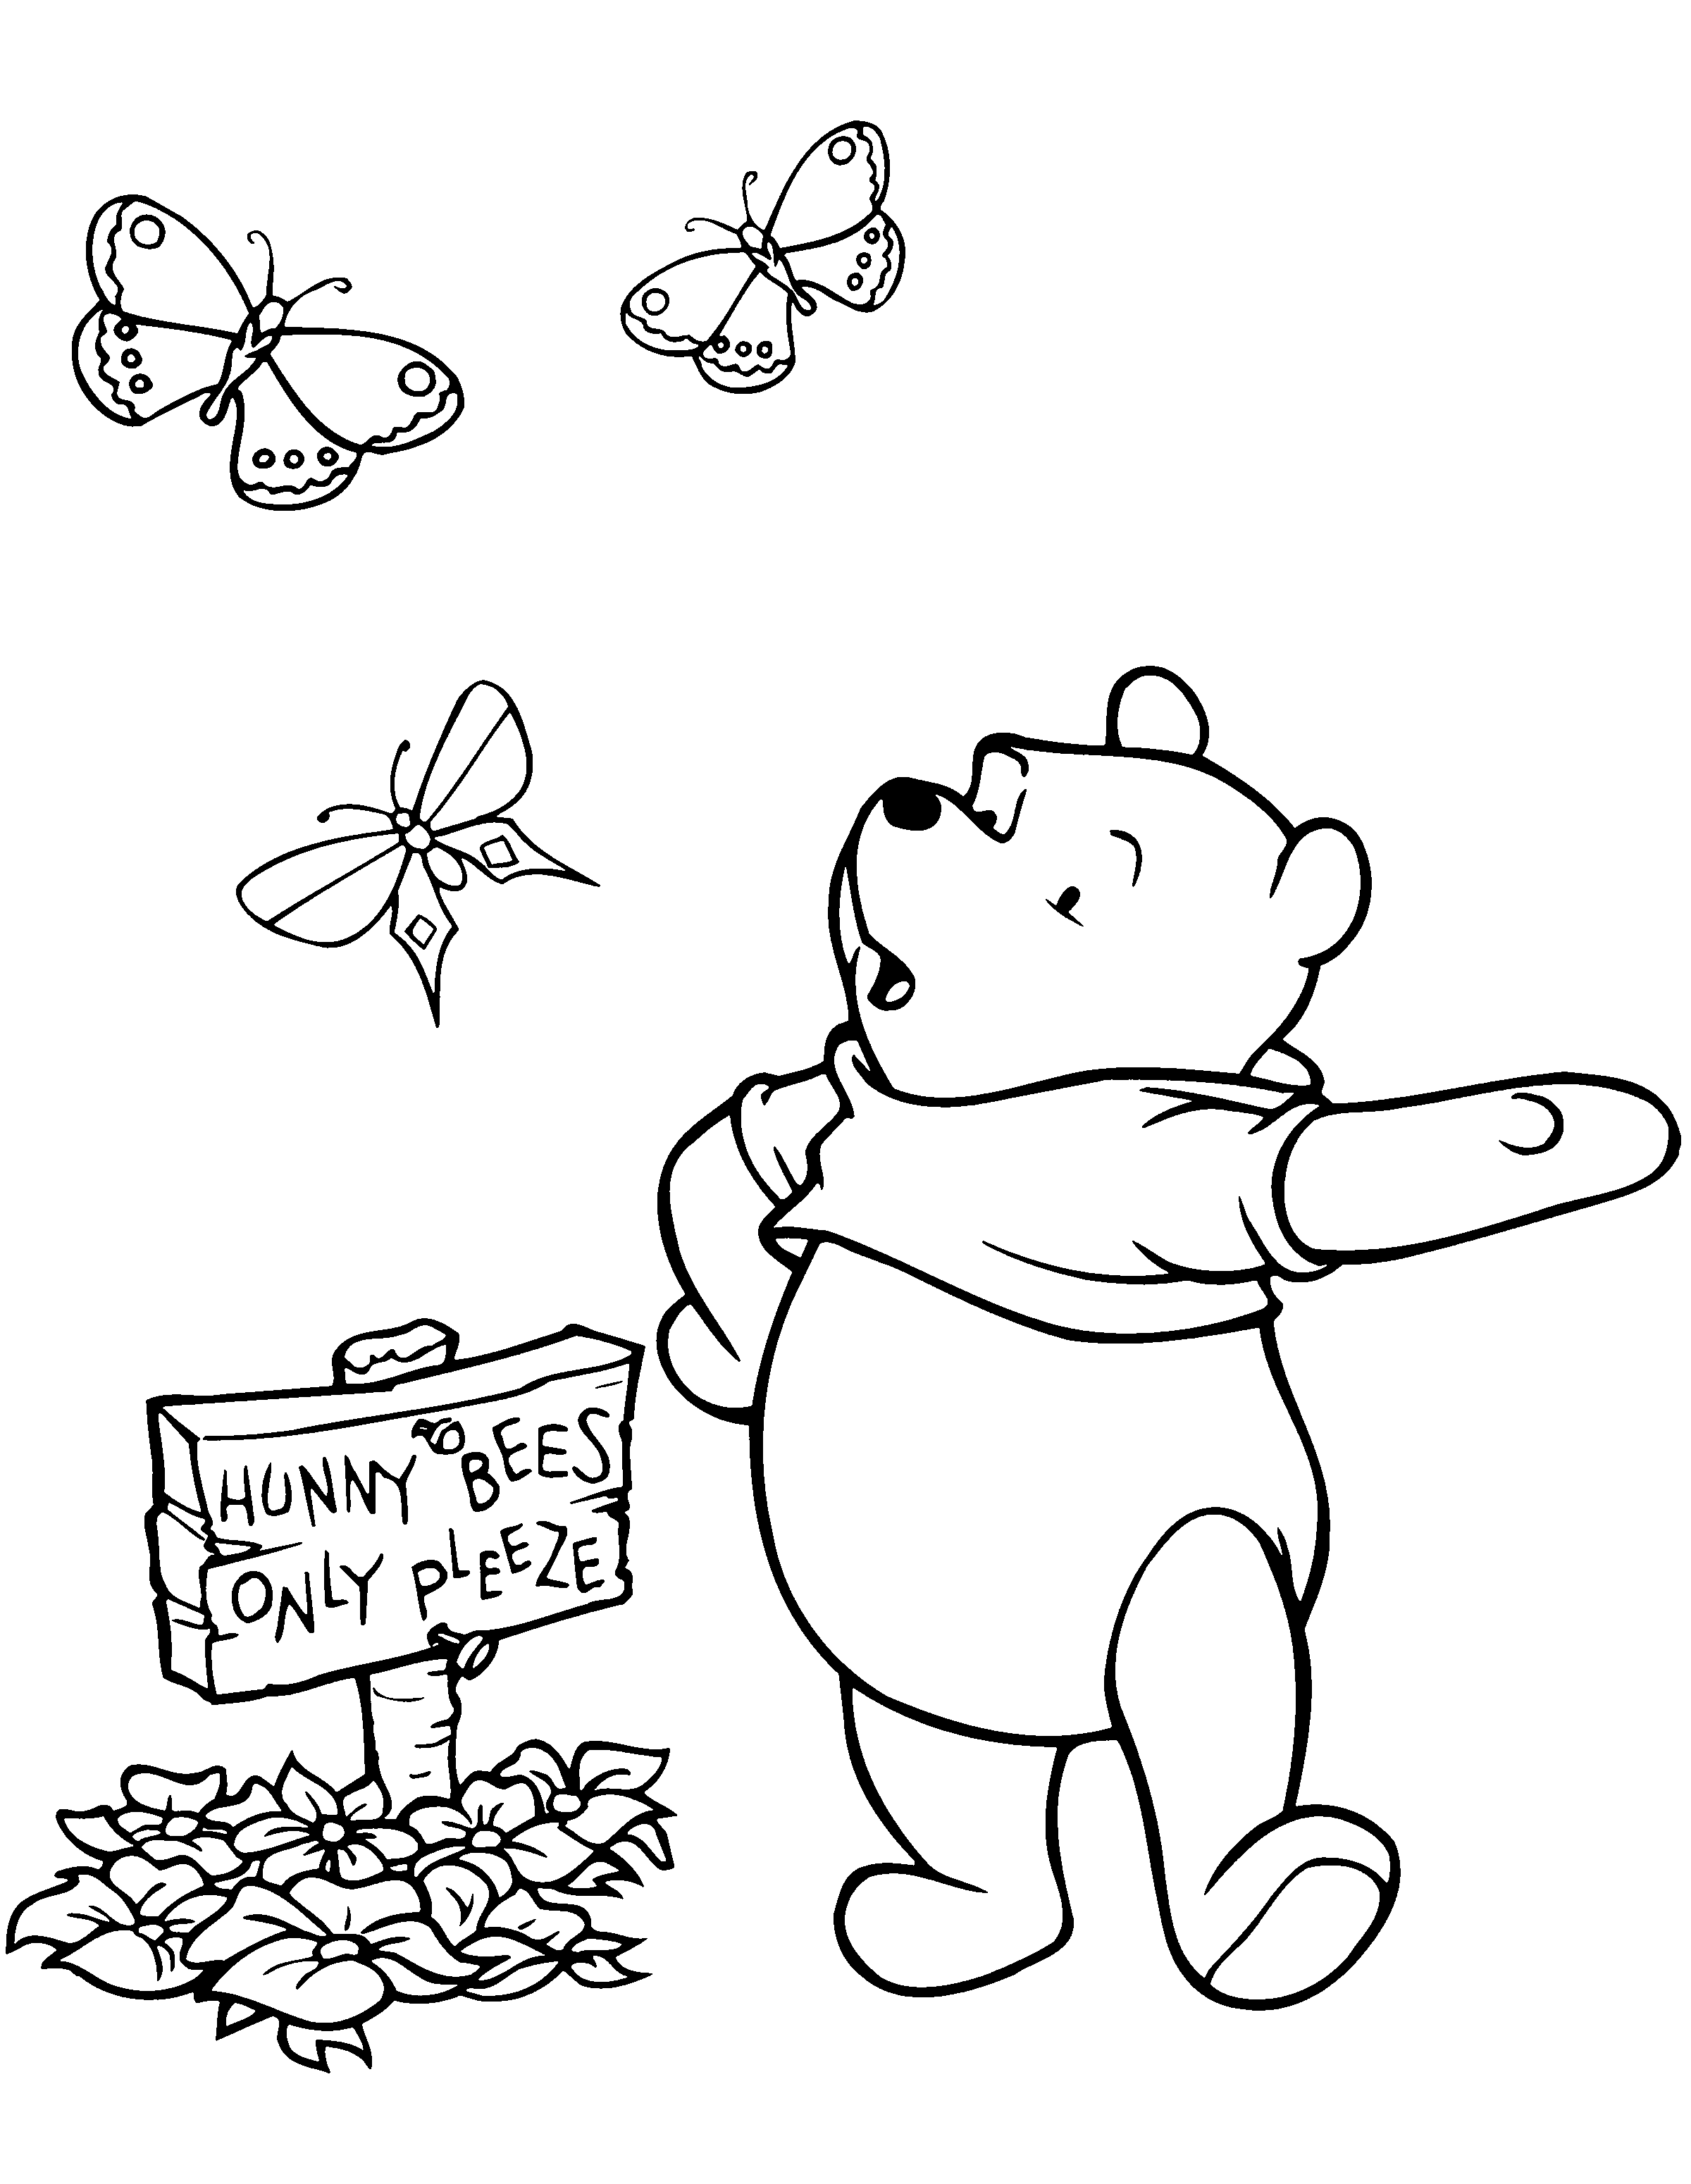 Tranh tập tô hình gấu Pooh đẹp nhất